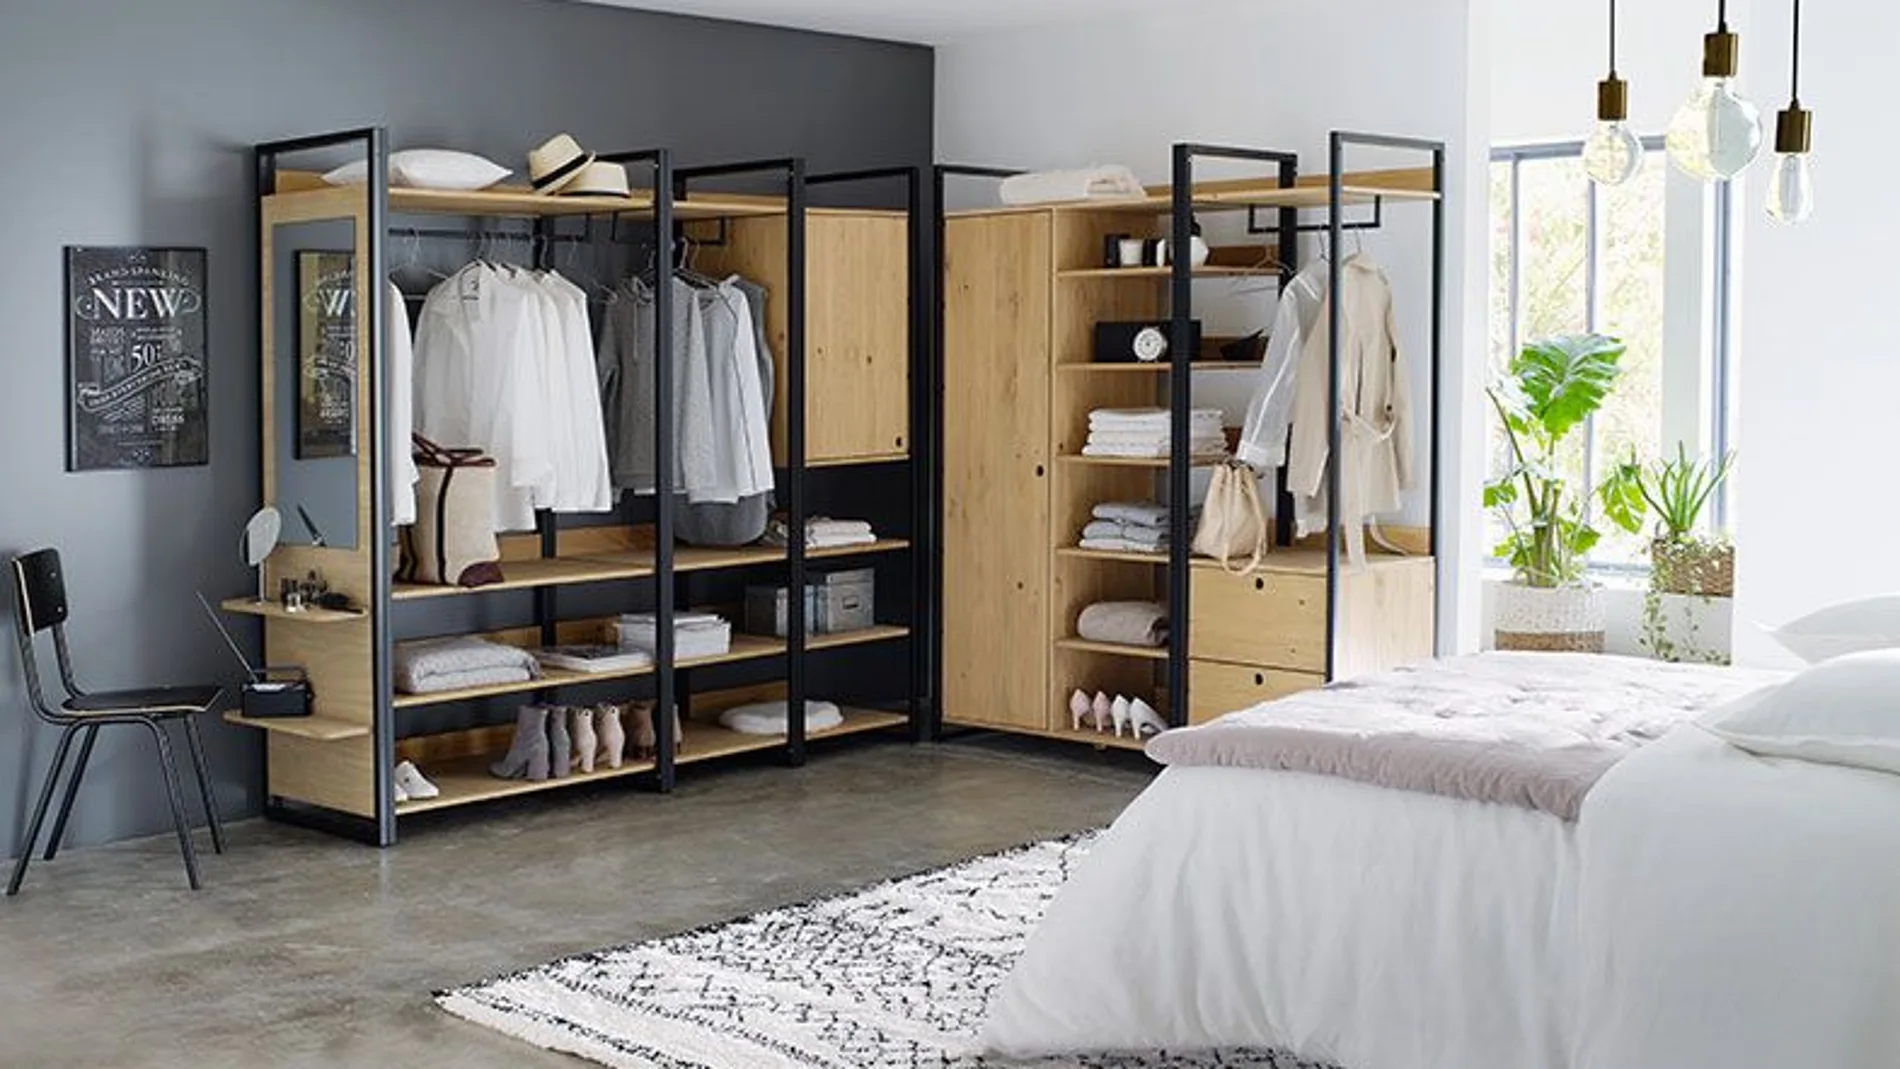 Soluciones muy prácticas para organizar la ropa en un mini dormitorio